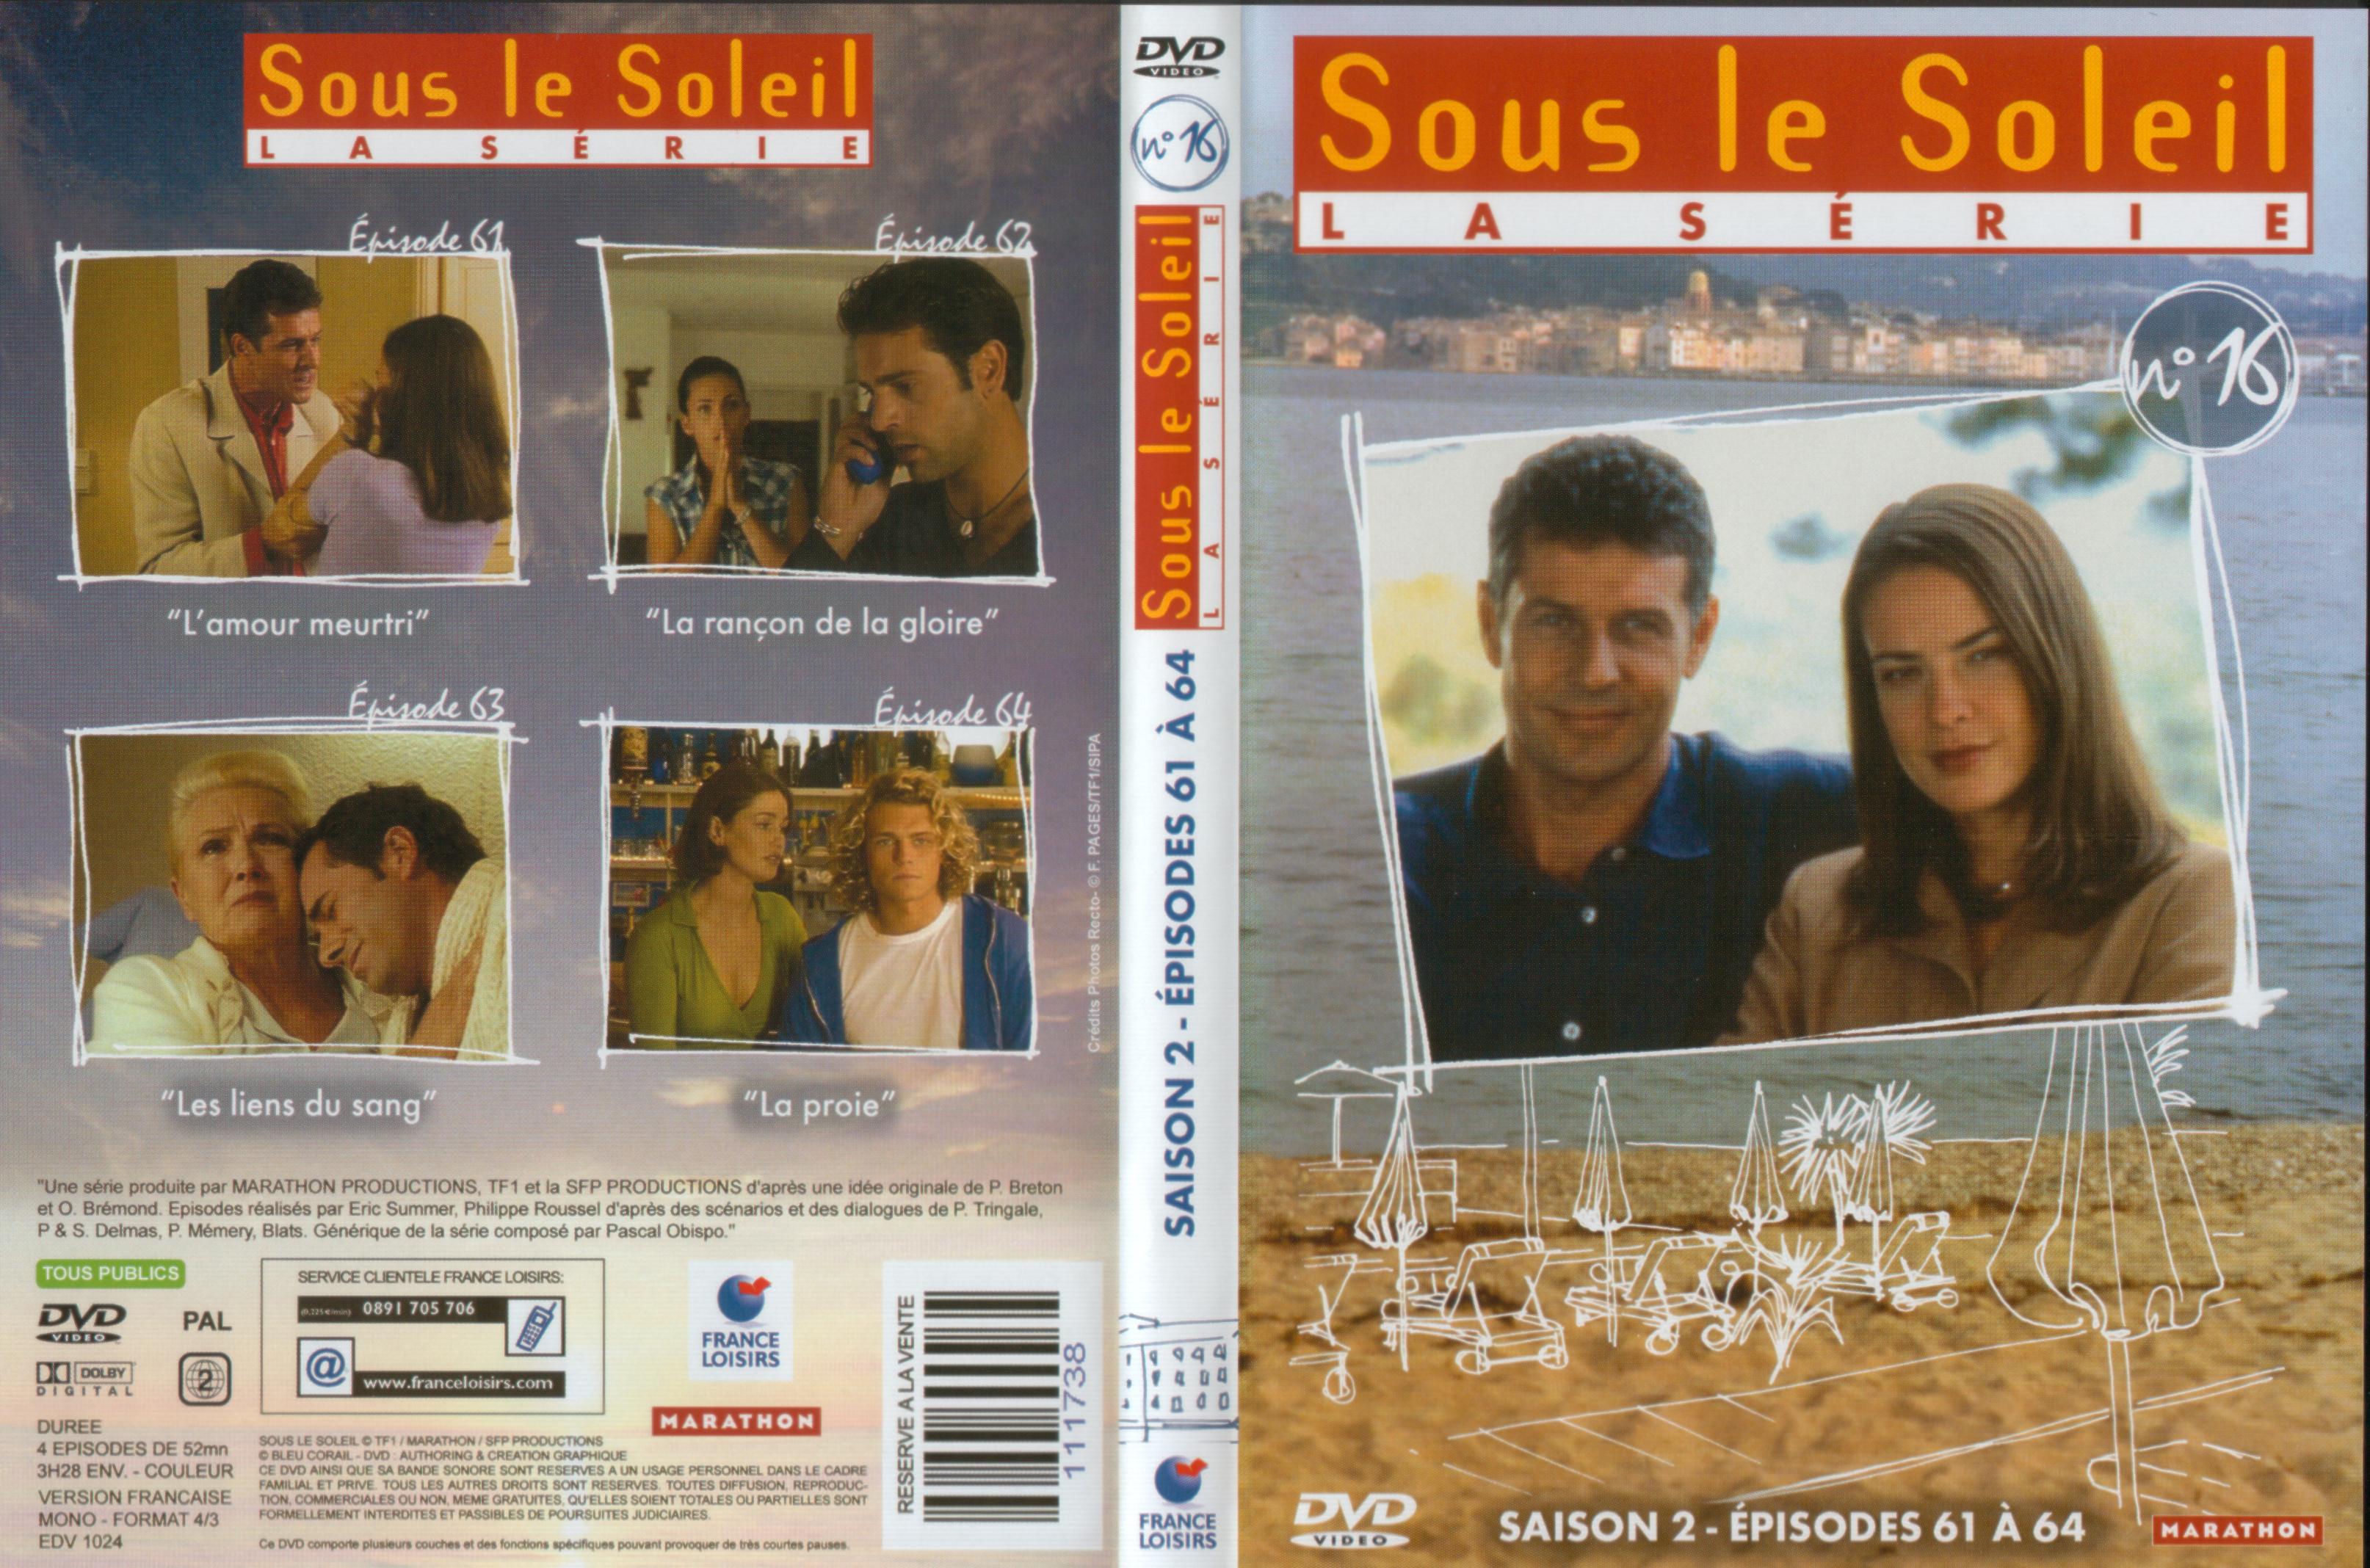 Jaquette DVD Sous le soleil saison 2 vol 16